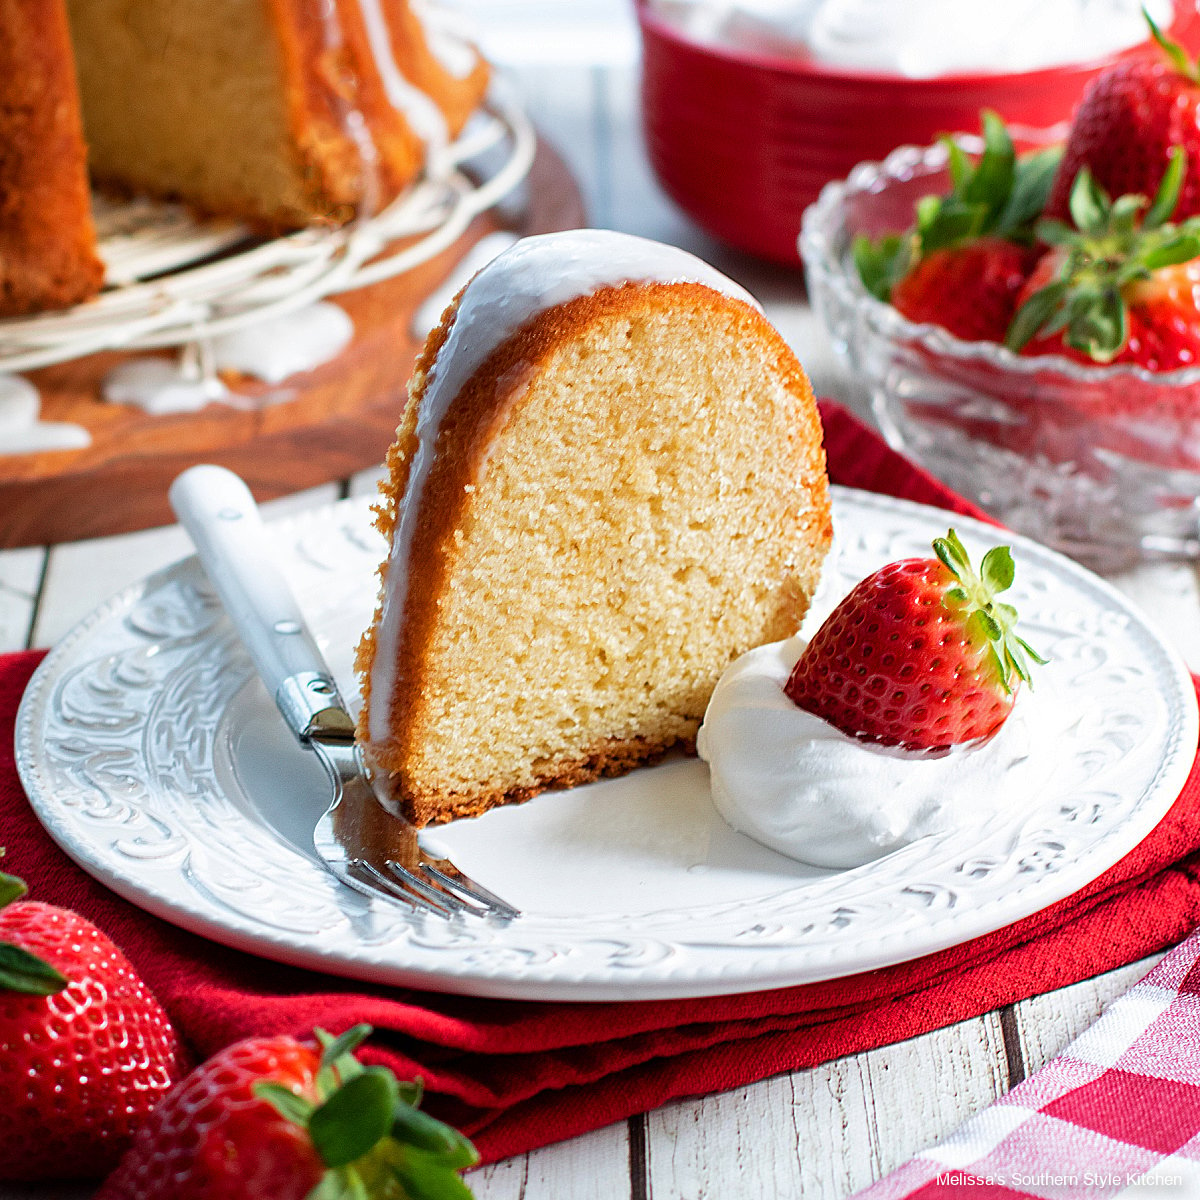 https://www.melissassouthernstylekitchen.com/wp-content/uploads/2022/02/buttermilk-pound-cake-recipe.jpg